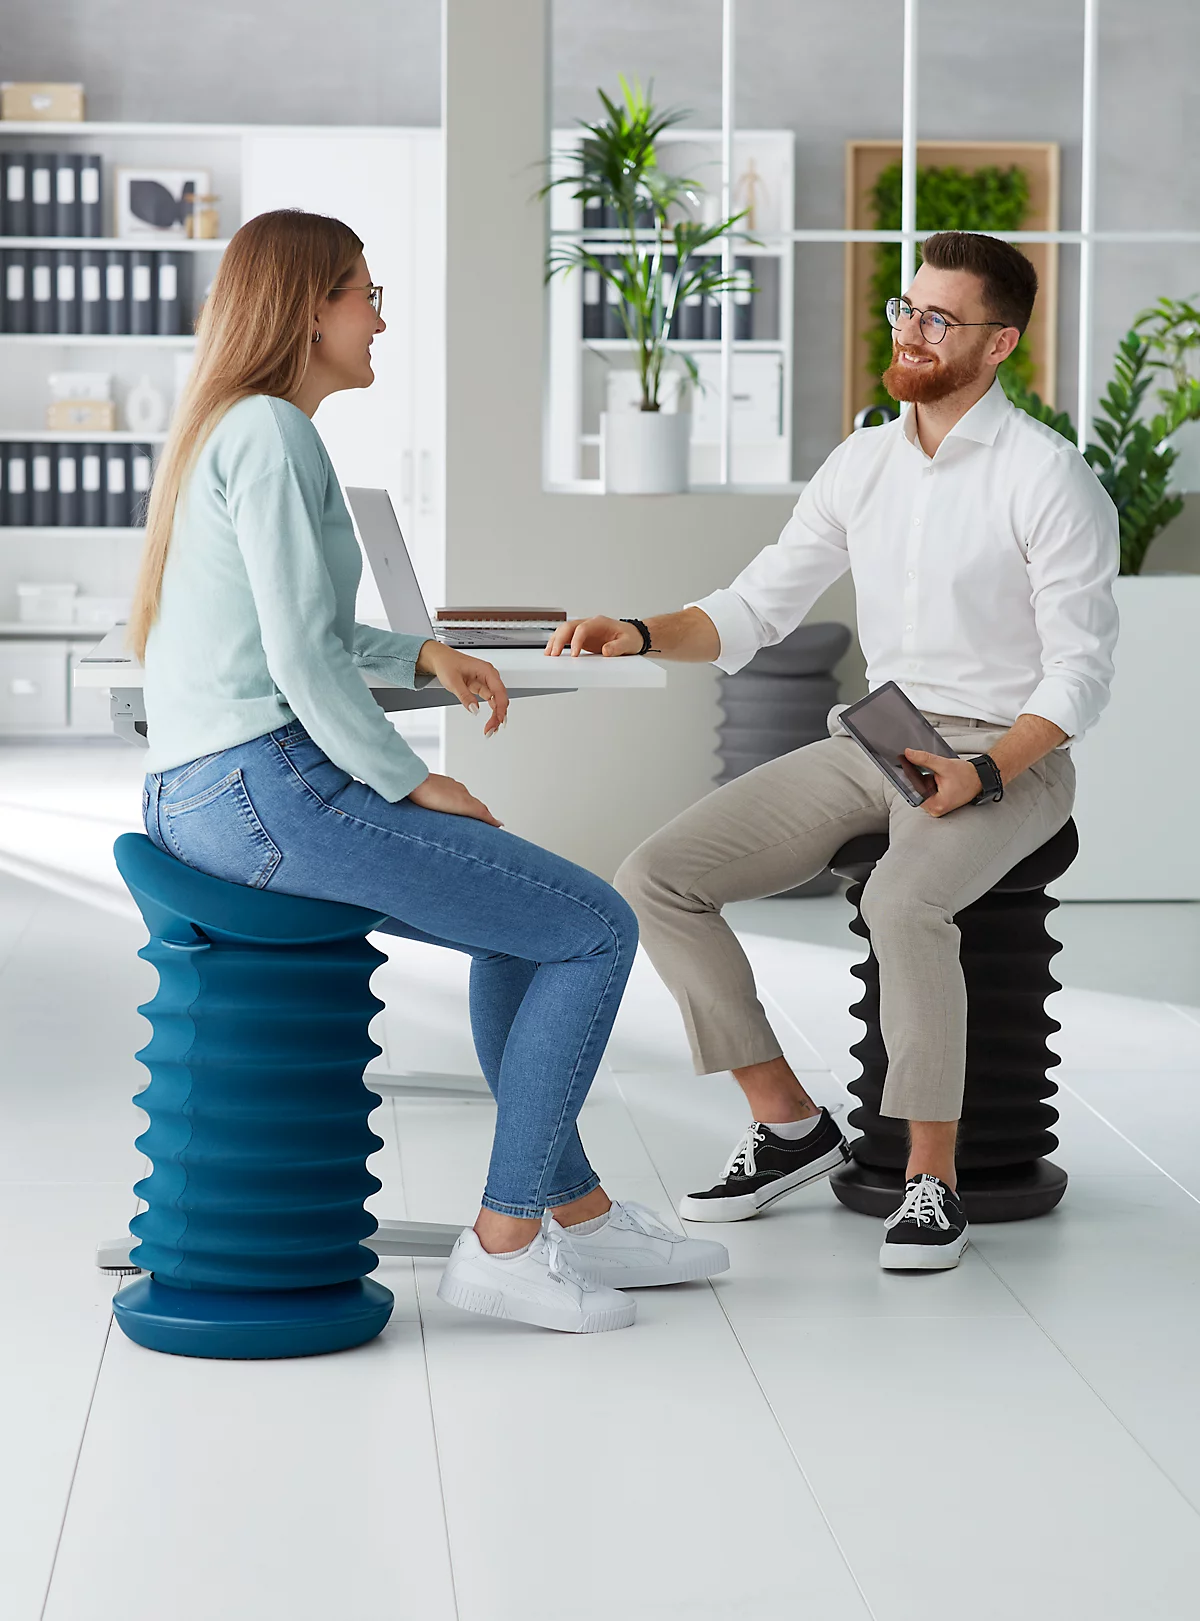 Kruk Topstar® Sitness 4D, voor bewegend & ergonomisch zitten, veermechanisme, zithoogte verstelbaar, B 375 x D 360 x H 530-640 mm, stoffen bekleding in diverse kleuren